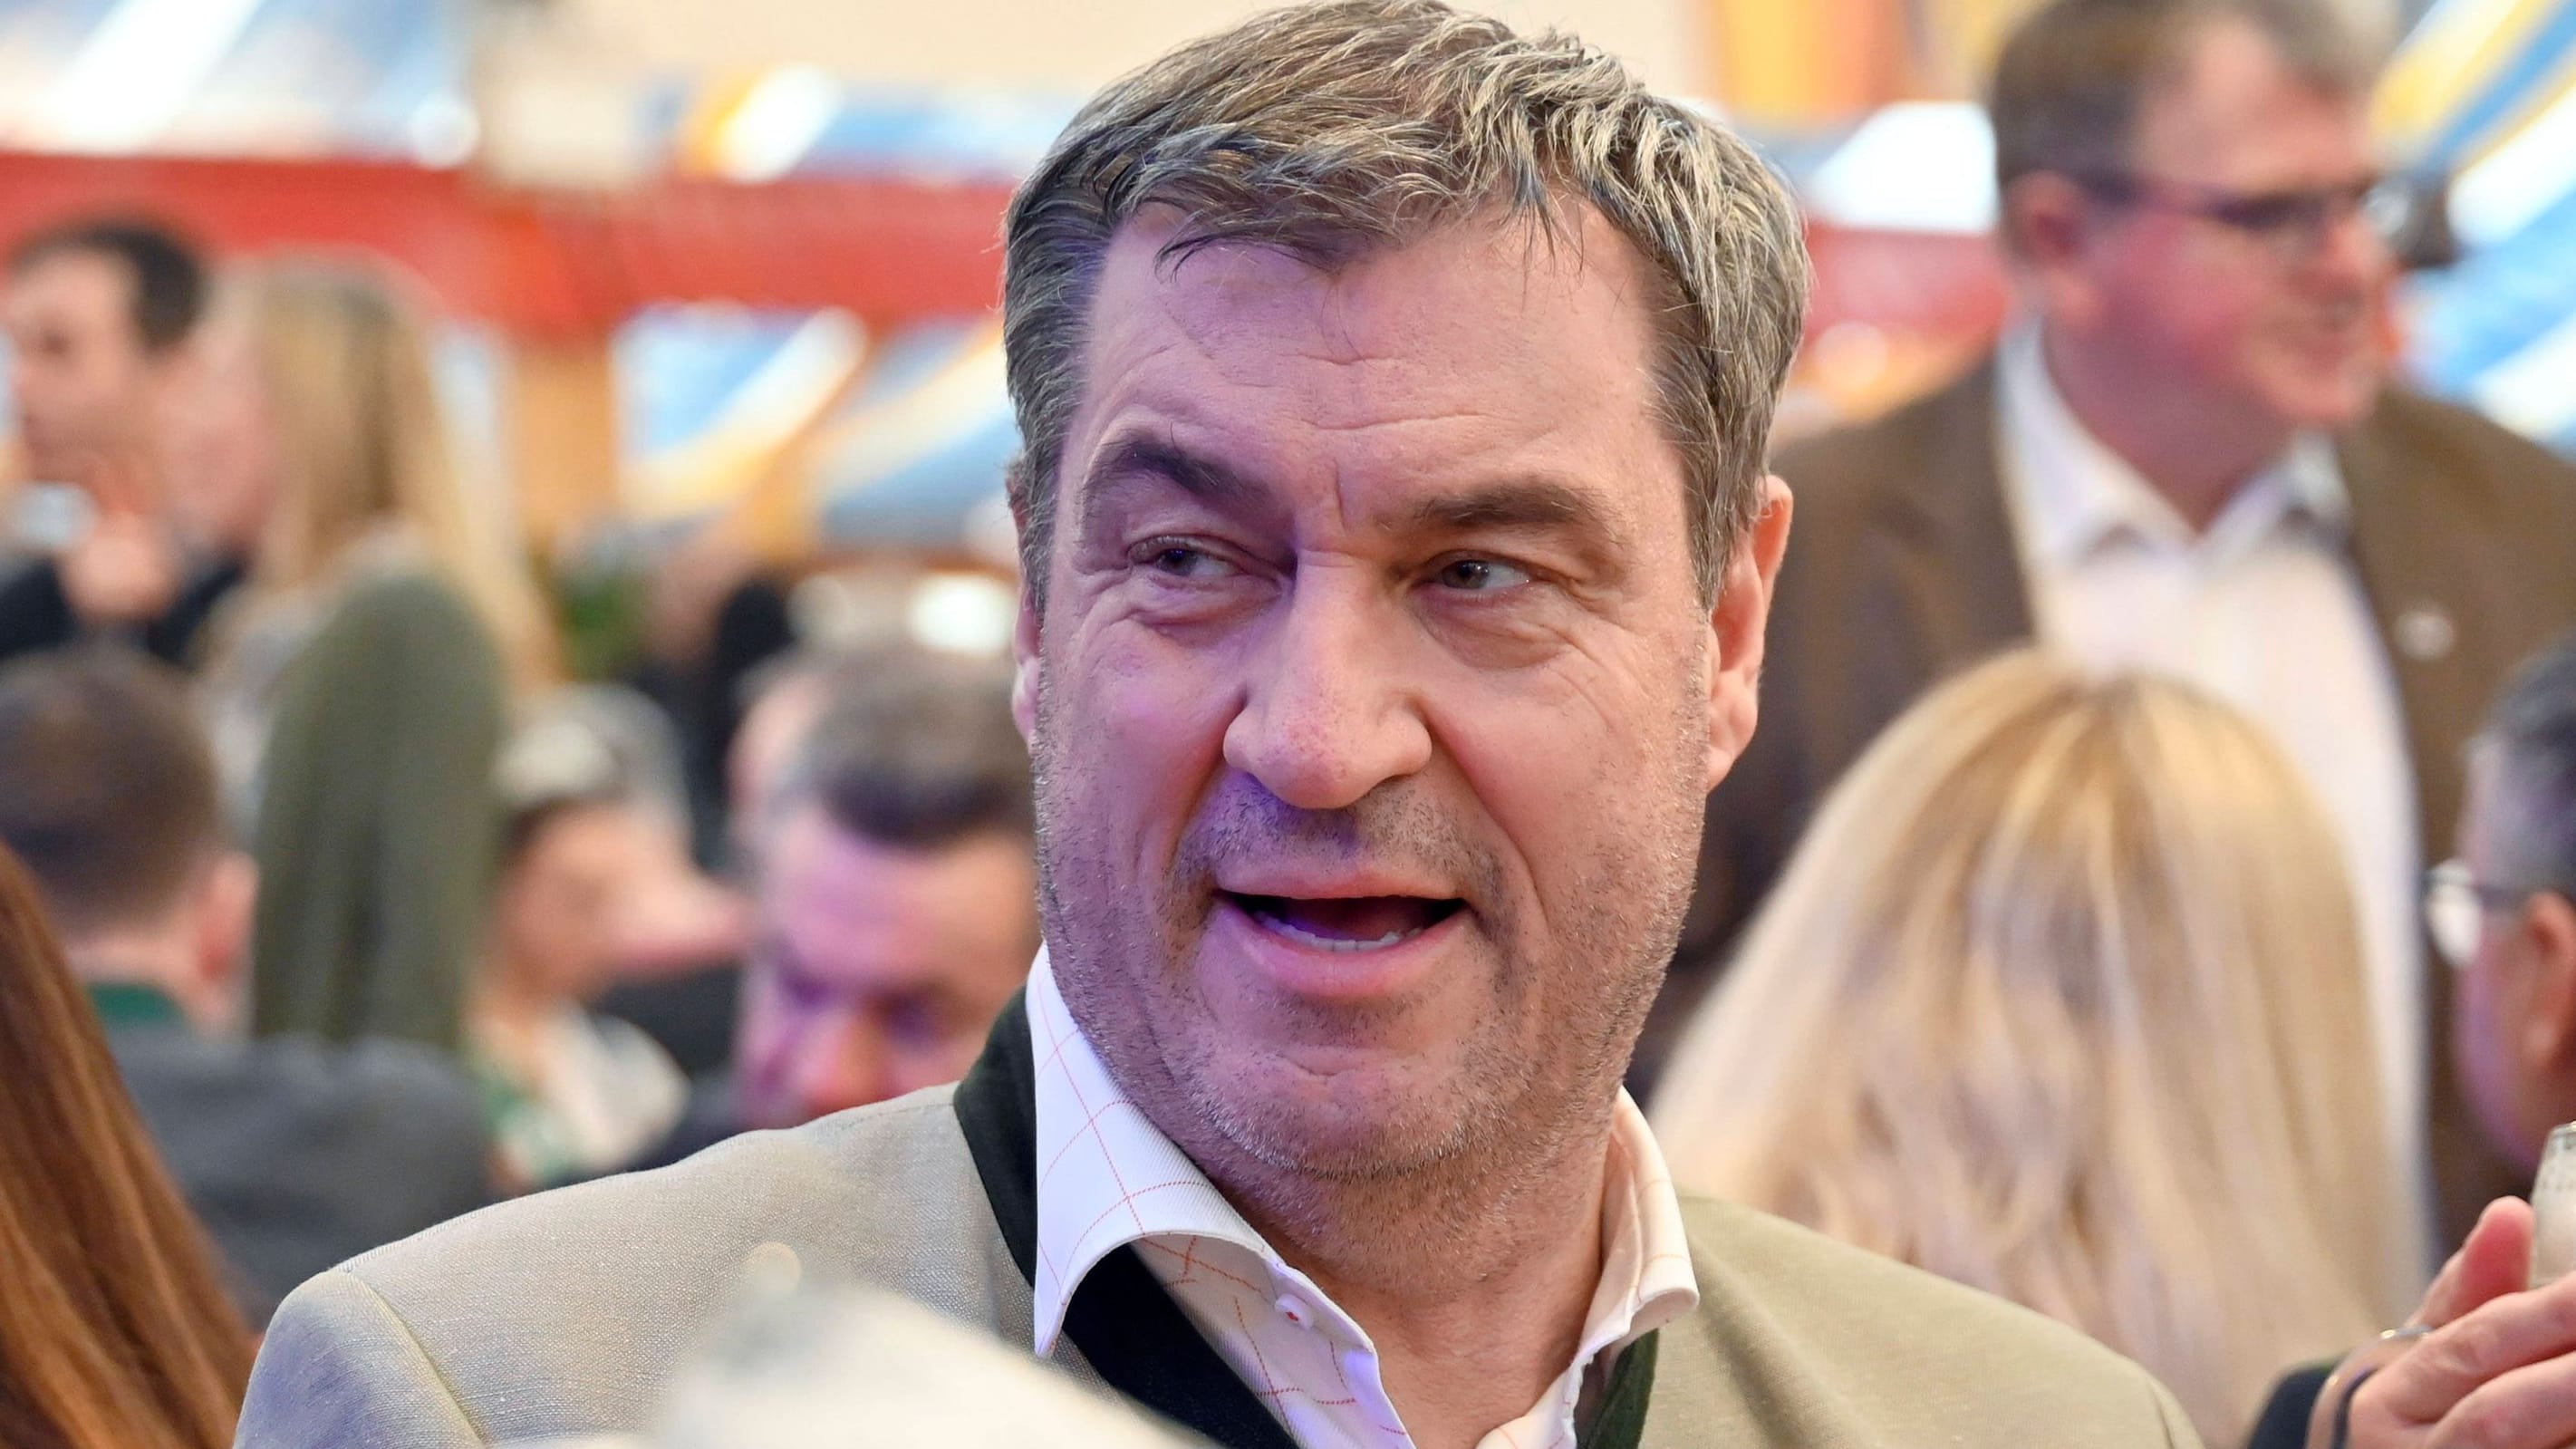 Politiker beleidigt Markus Söder und Karl Lauterbach – Gerichtsverhandlung